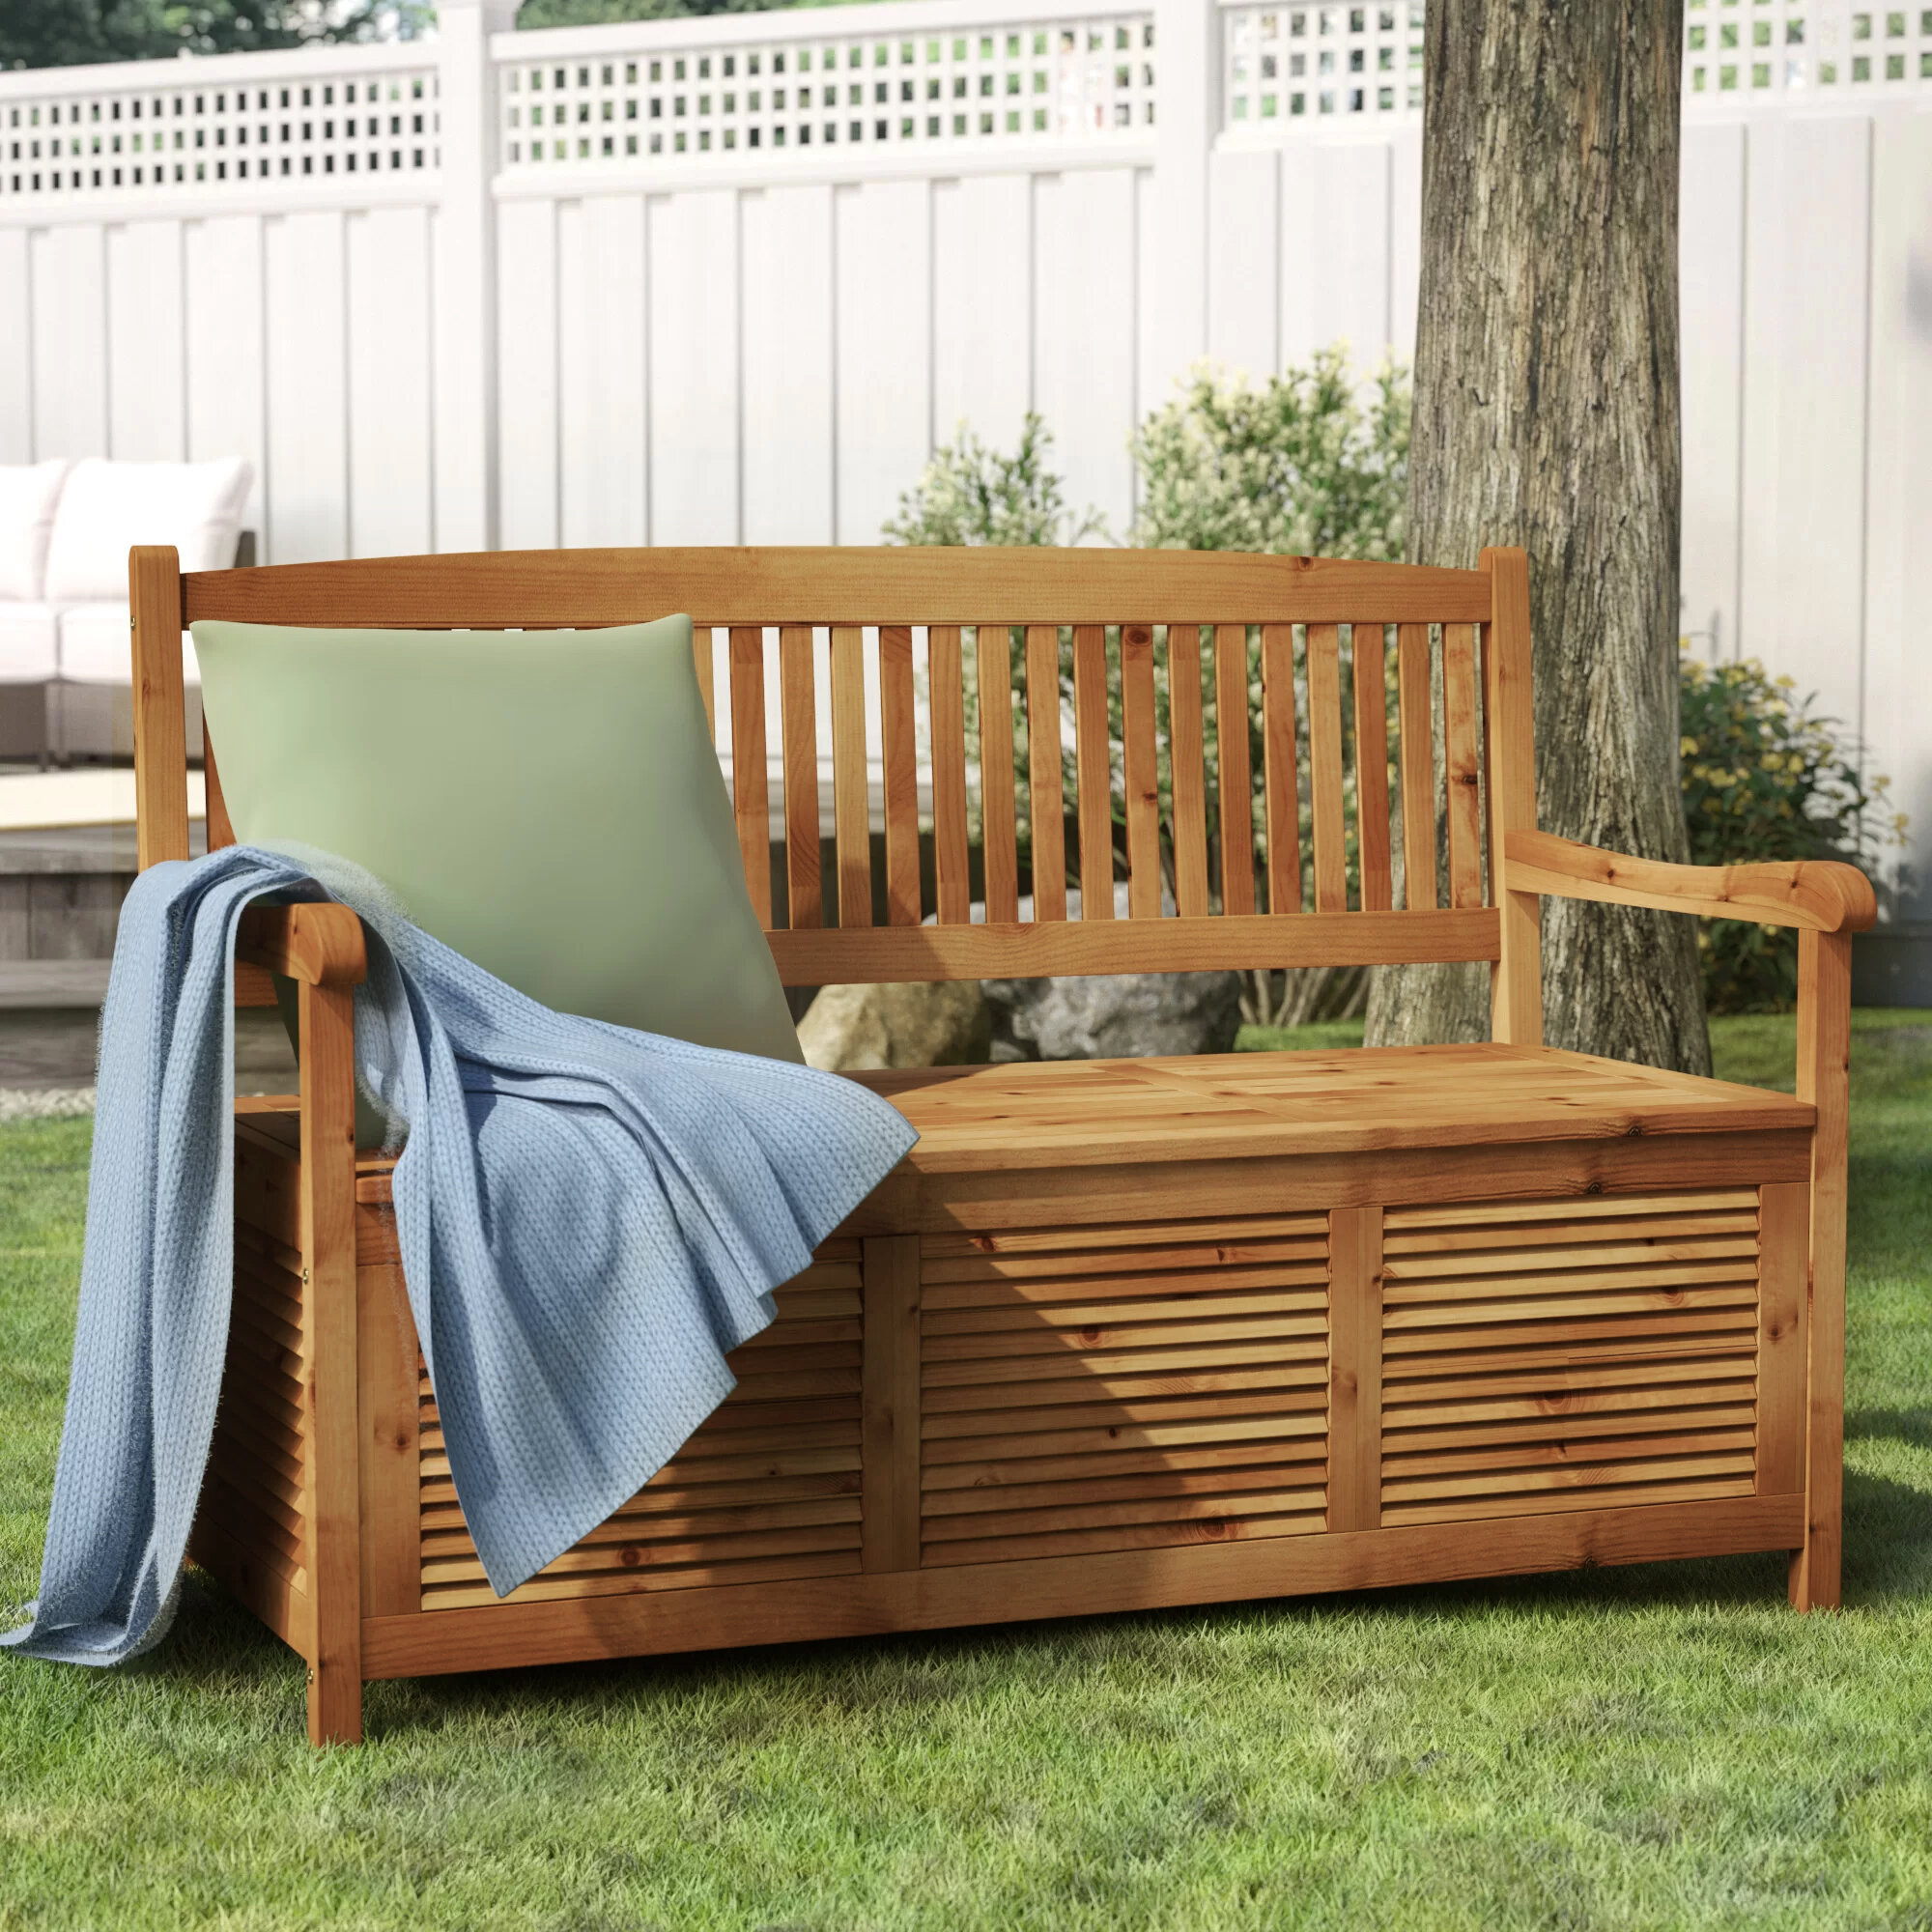 Beige Garden Bench Storage Chest Outdoor Seat Chair Lockable Weather Resistant 